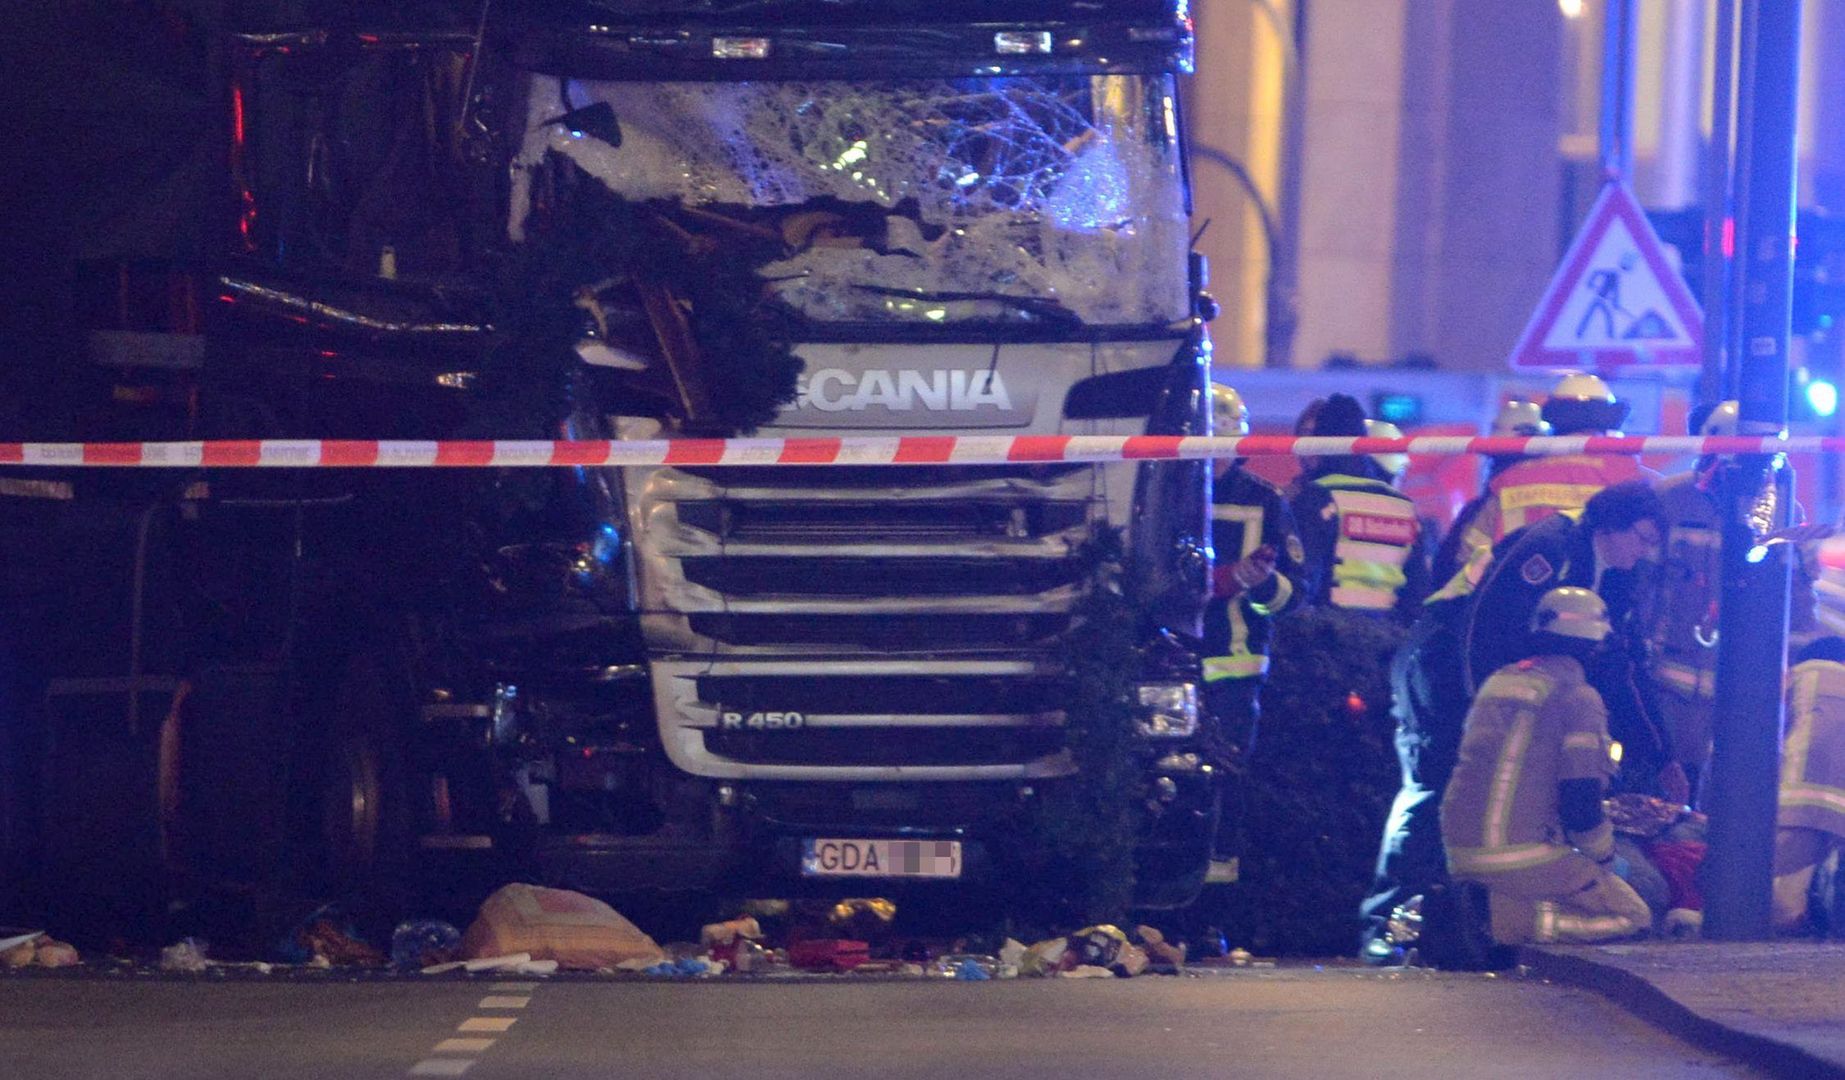  Zamach w Berlinie. Ciężarówka z Polski wjechała w tłum